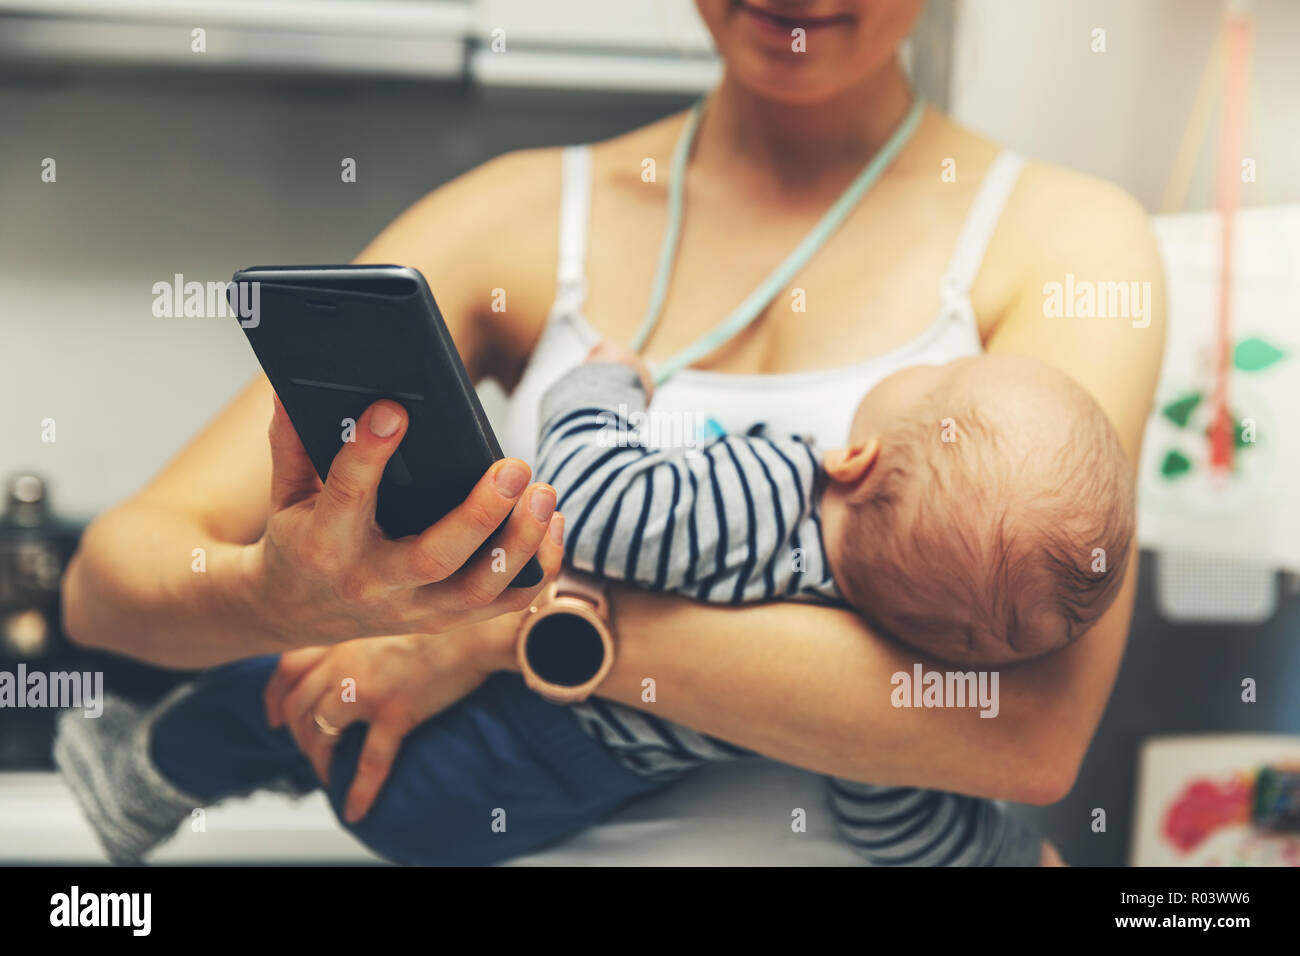 La madre está utilizando el smartphone mientras mantiene el bebé lactante Foto de stock